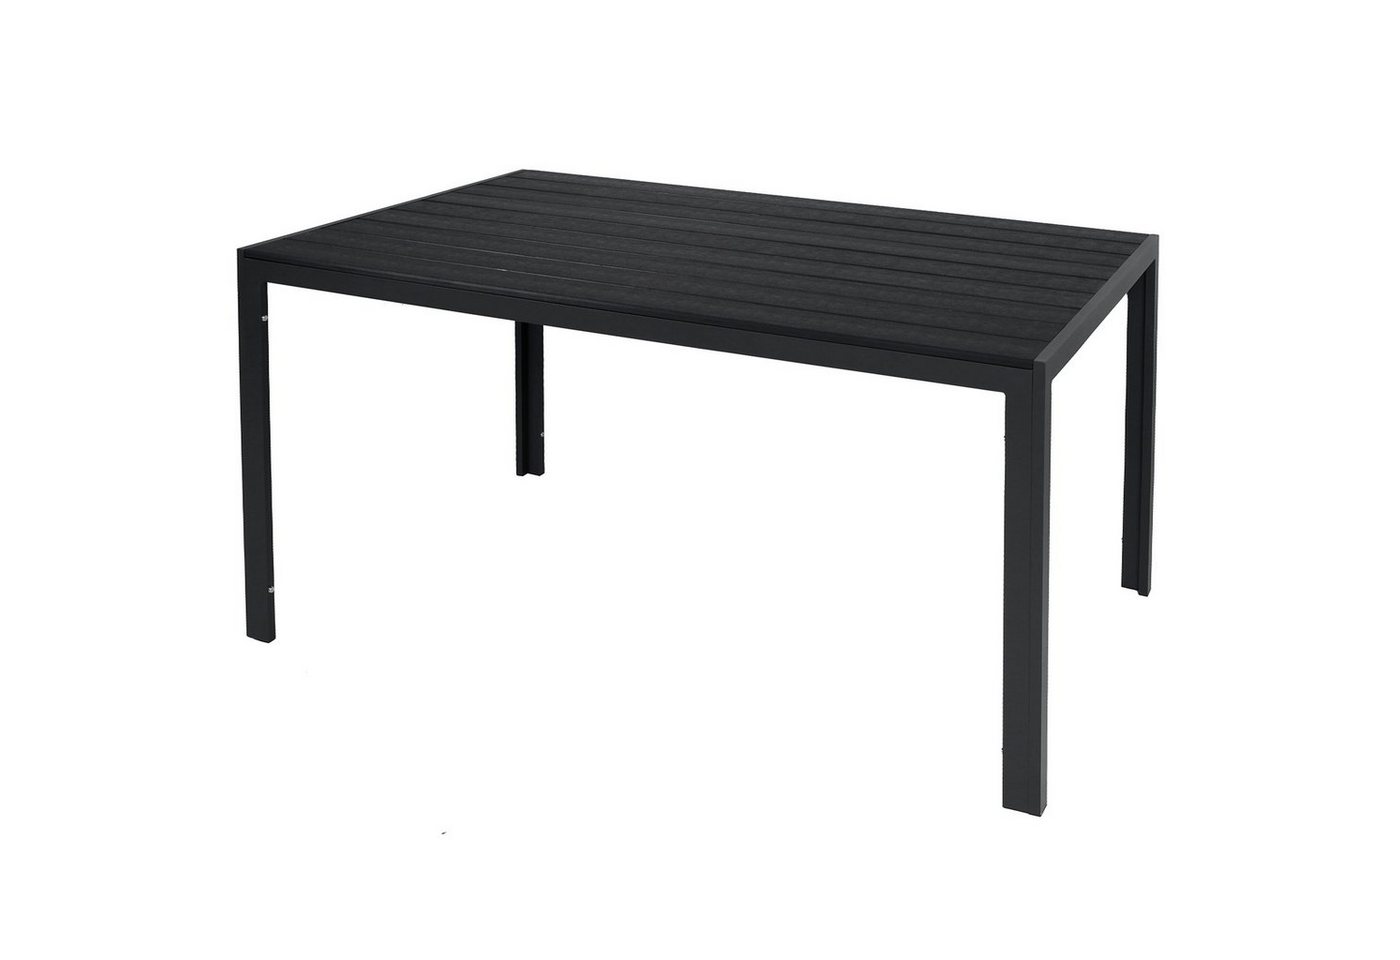 INDA-Exclusiv Küchentisch Gartentisch Tischplatte Non-Wood Aluminium anthrazit-schwarz 150x90cm von INDA-Exclusiv